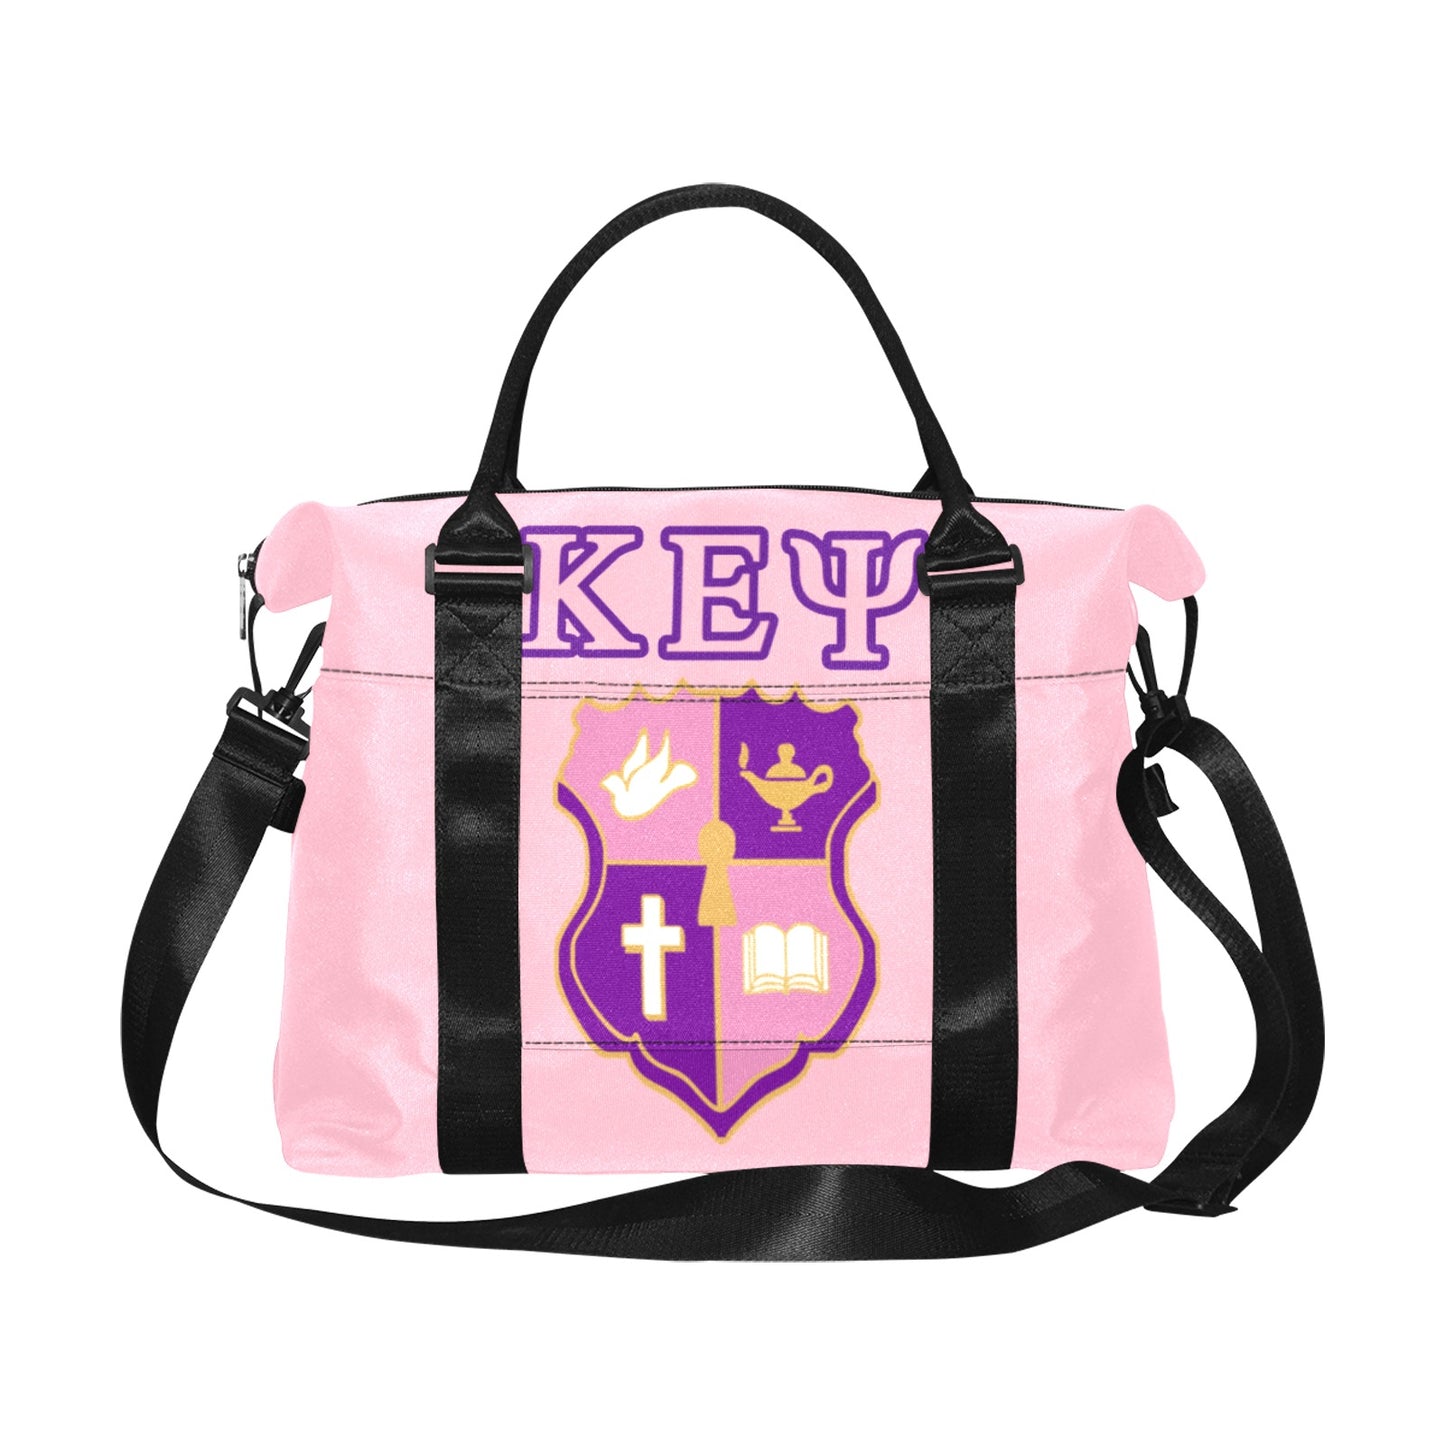 KEY Crest Large Capacity Duffle Bag